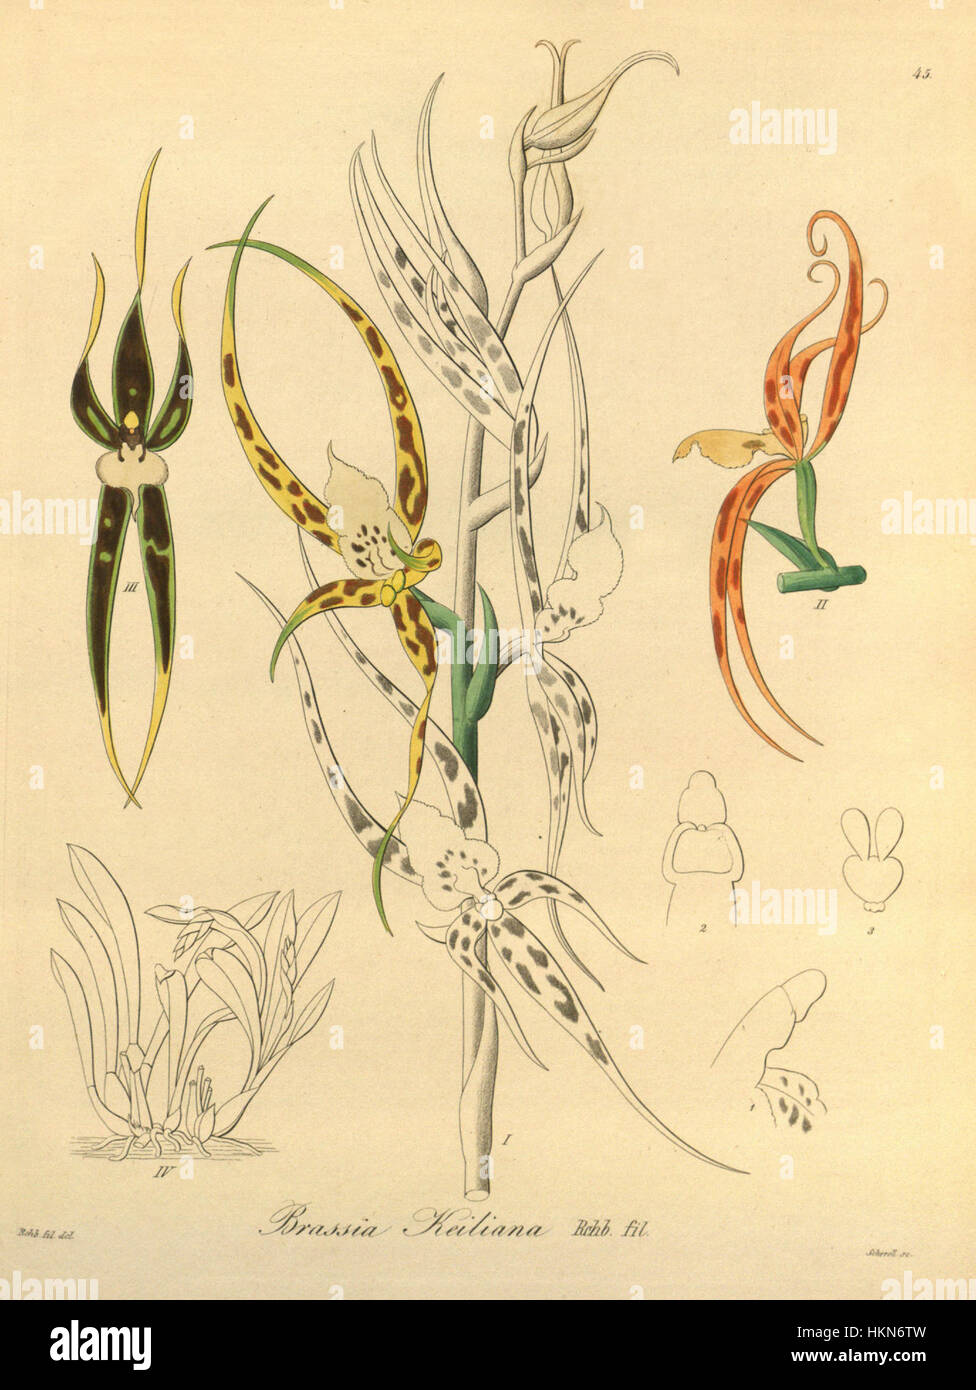 Ada keiliana (as Brassia keiliana) - Xenia vol 1 pl 45 (1858) Stock Photo